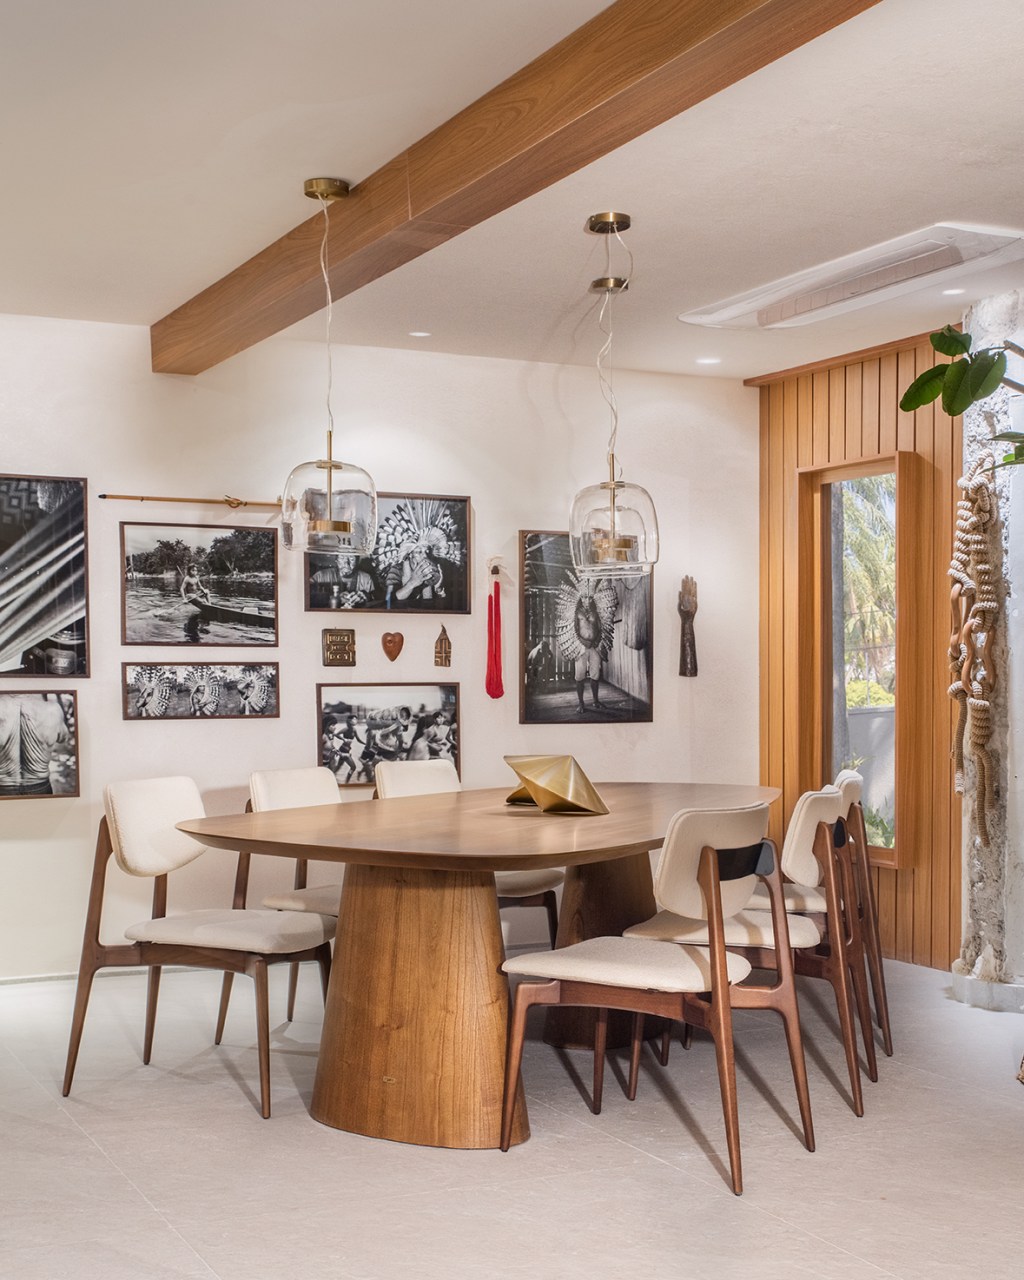 Bruno Moraes - Cozinha Funcional. Projeto da CASACOR São Paulo 2023. Na foto, sala de jantar com mesa de madeira e quadros.